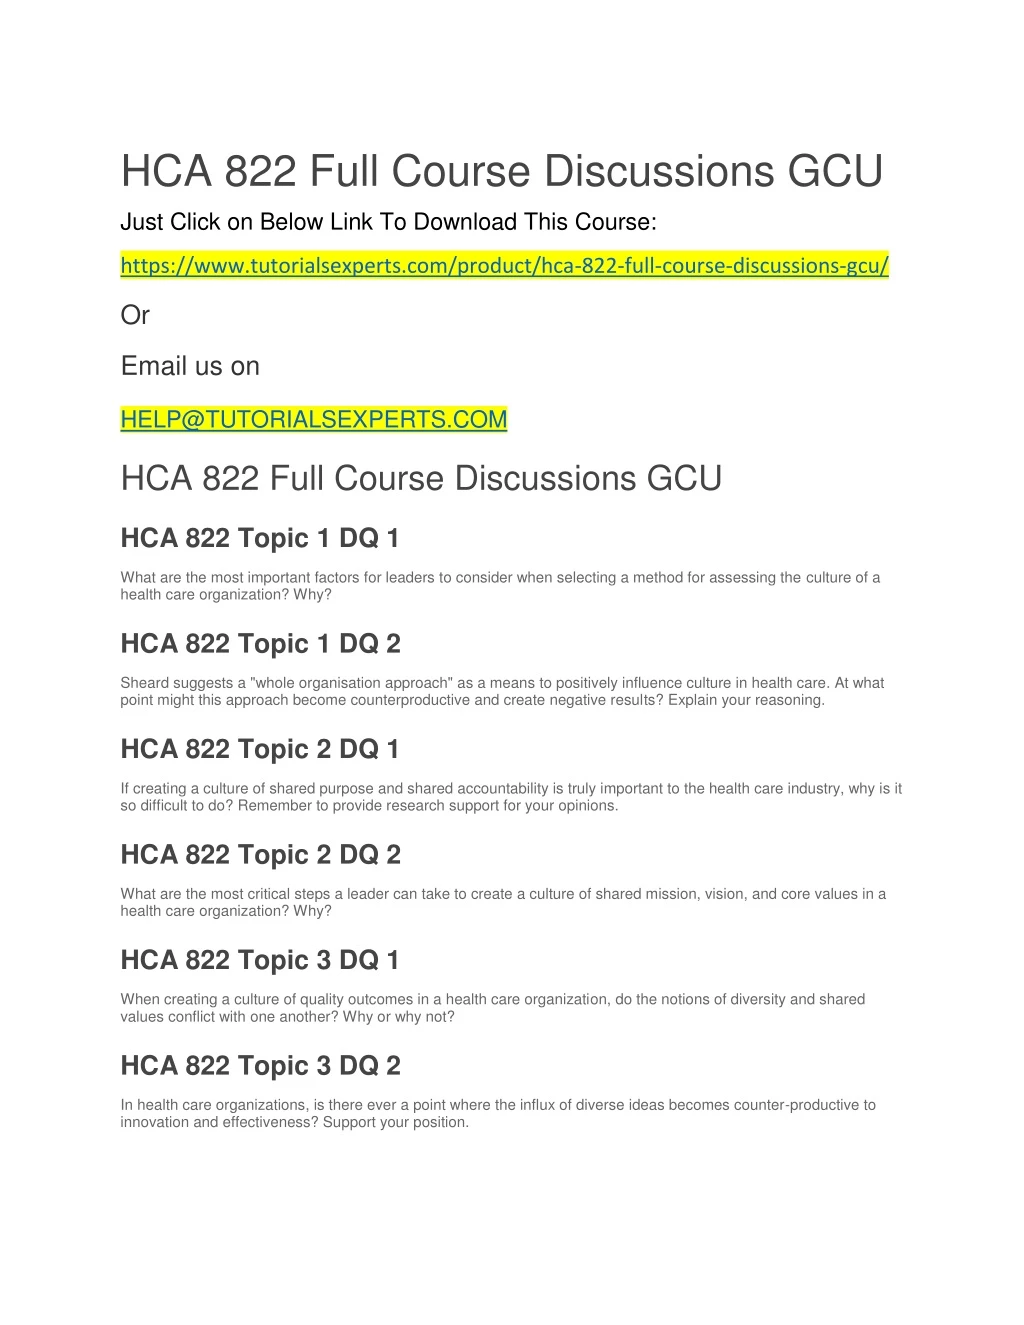 hca 822 full course discussions gcu